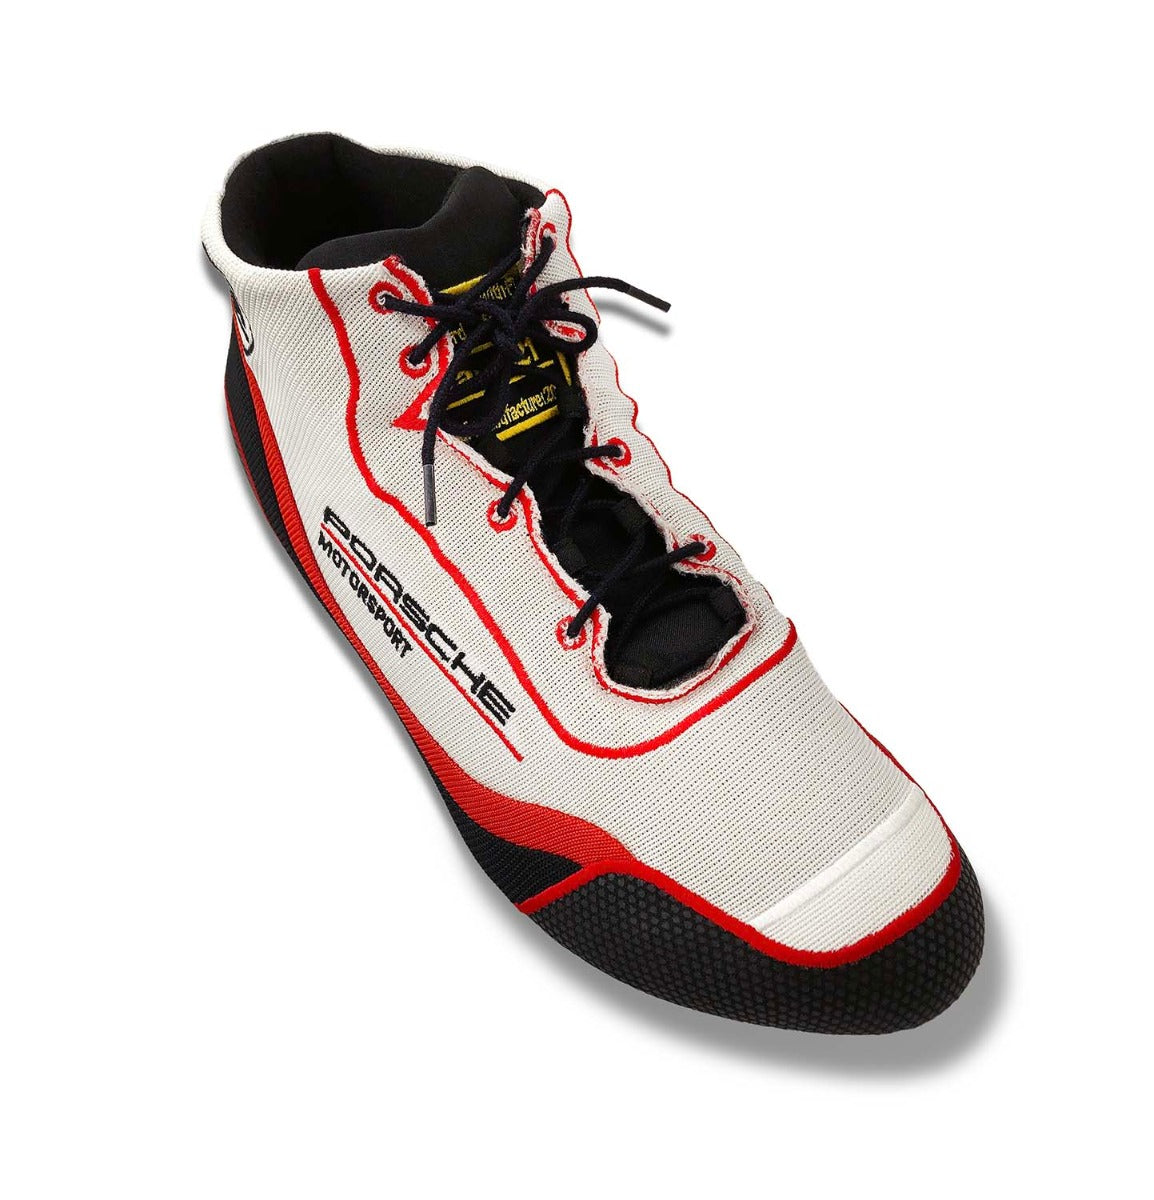 Stand21 Porsche Motorsport Air-S Speed Racing Shoe (8856-2000)